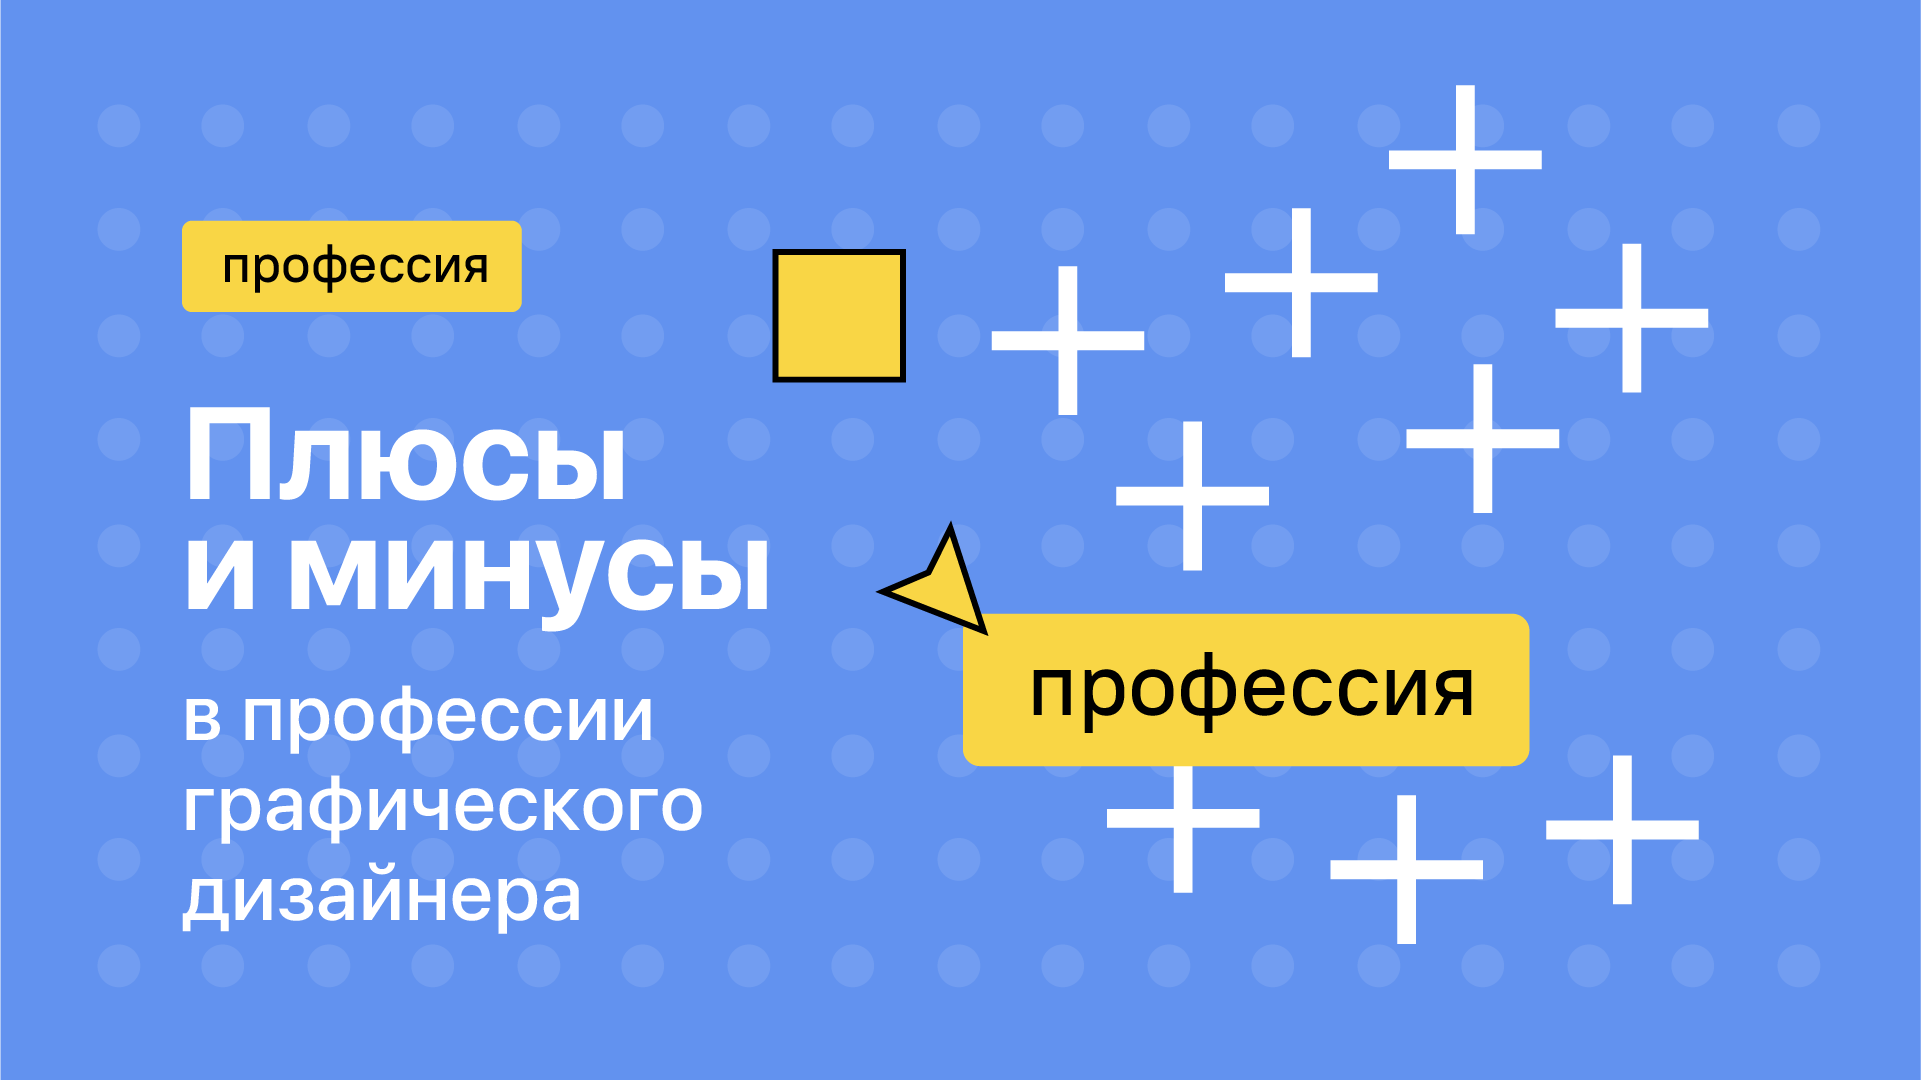 Графический дизайнер: кто это и что делает — обзор профессии — Дизайн на paraskevat.ru